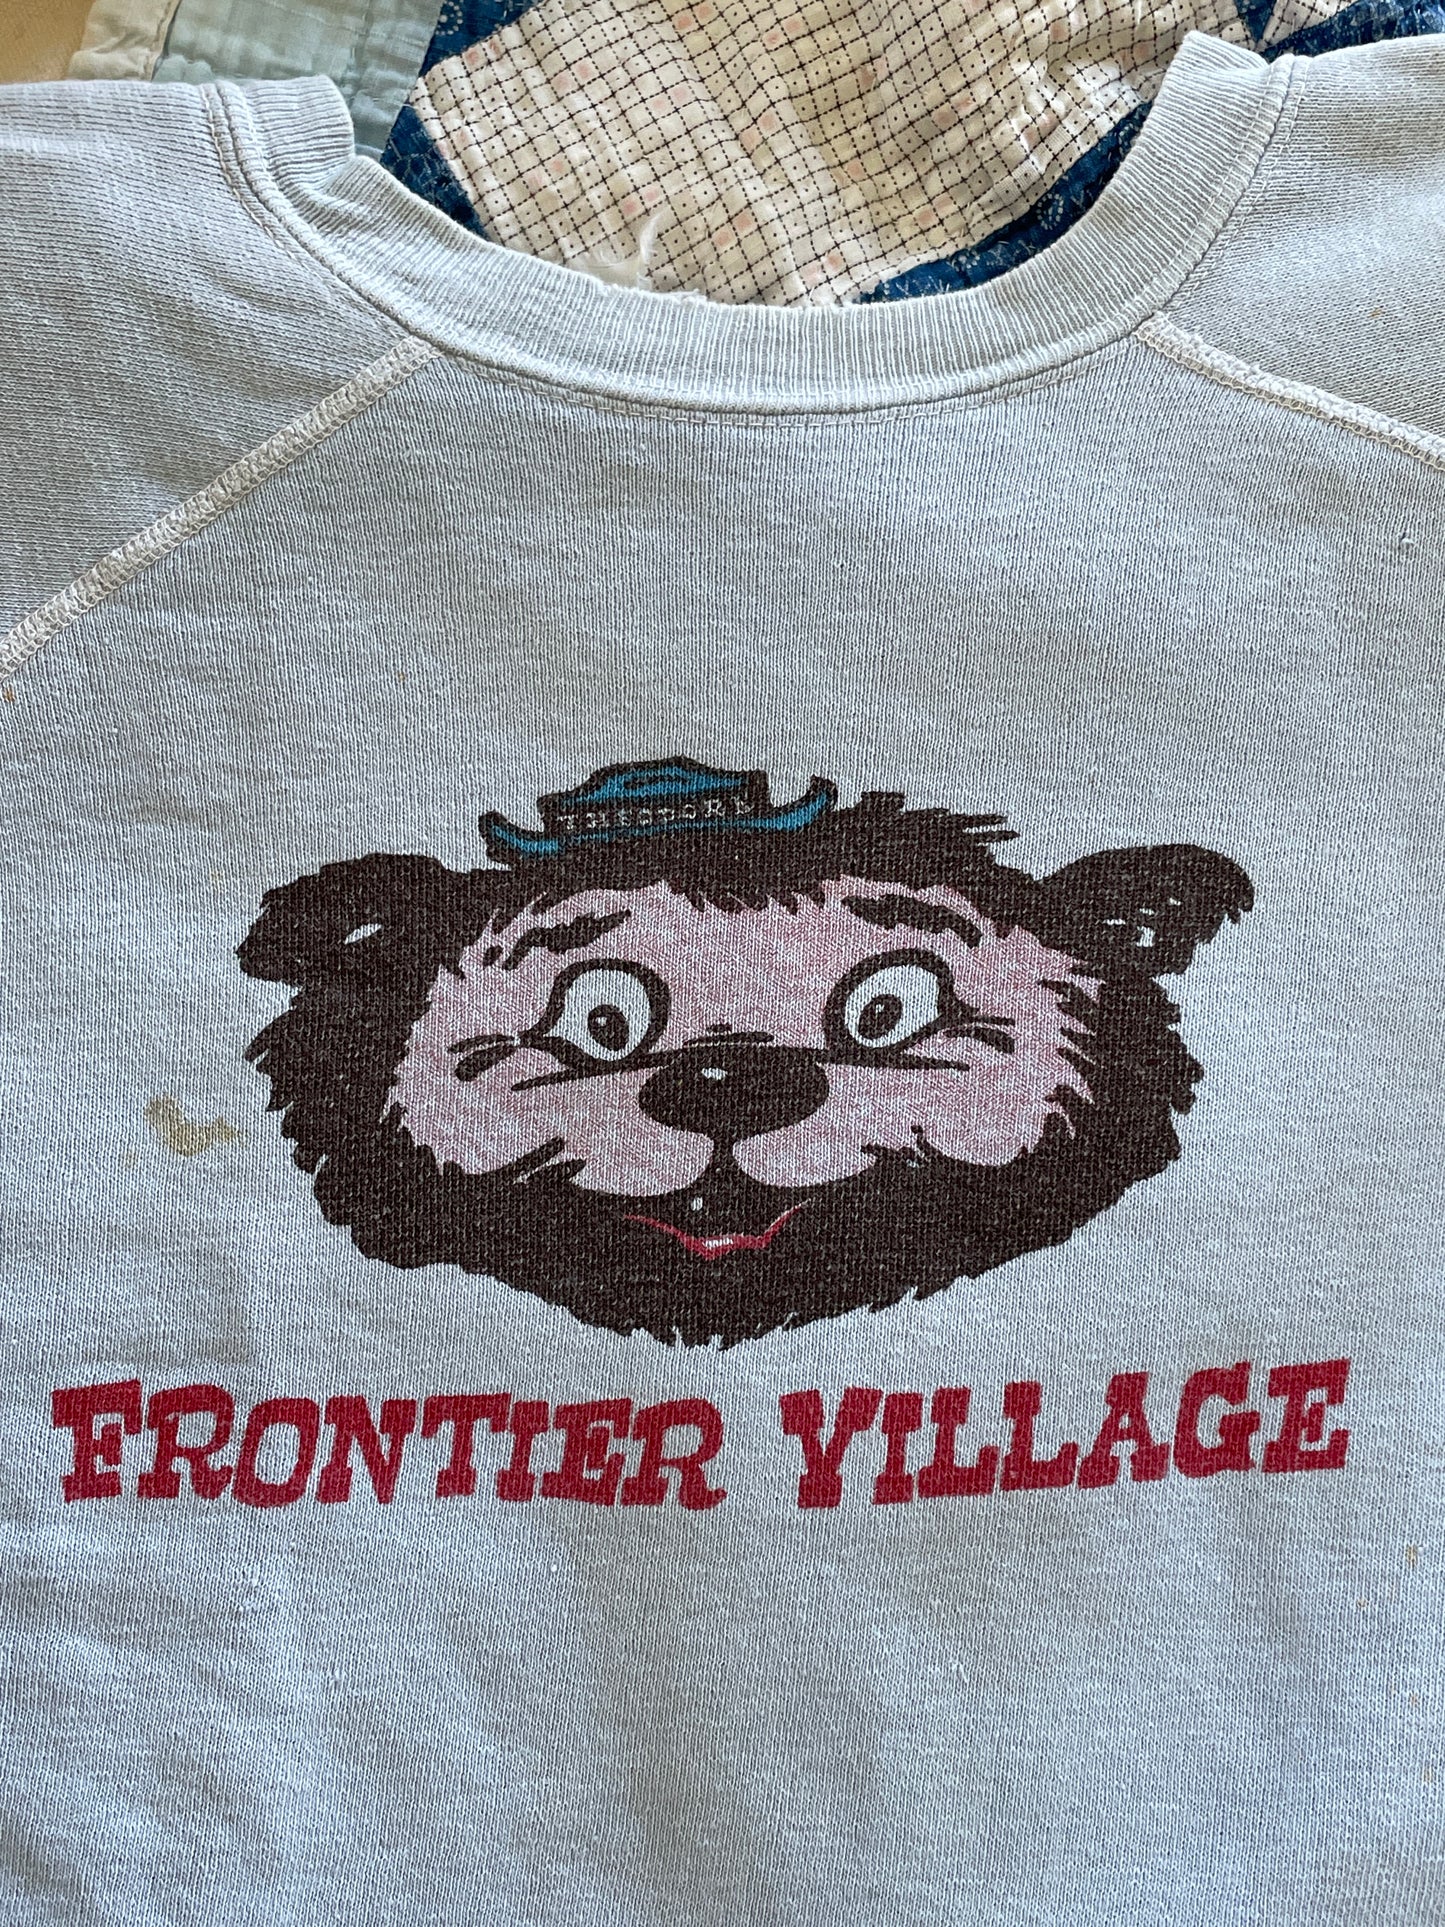 70s Frontier Village Sweatshirt